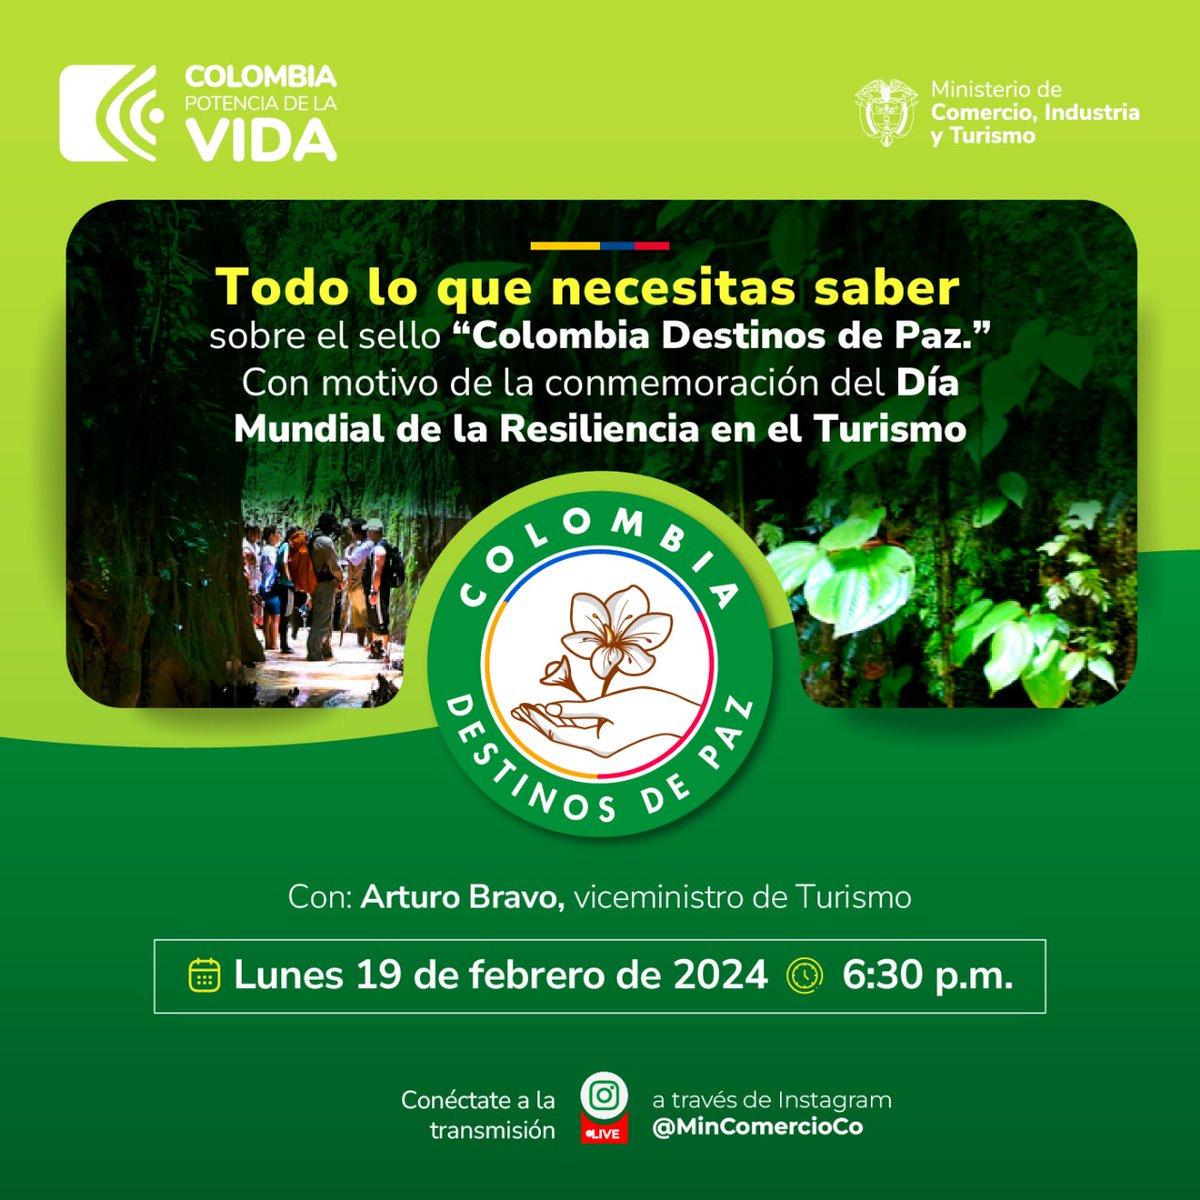 ¡Conmemoremos el Día Mundial de la Resiliencia en el Turismo! Hoy resolveremos sus dudas sobre cómo obtener el sello #ColombiaDestinosDePaz, nos vemos a las 6:30 p.m. en el Instagram de @MincomercioCo.